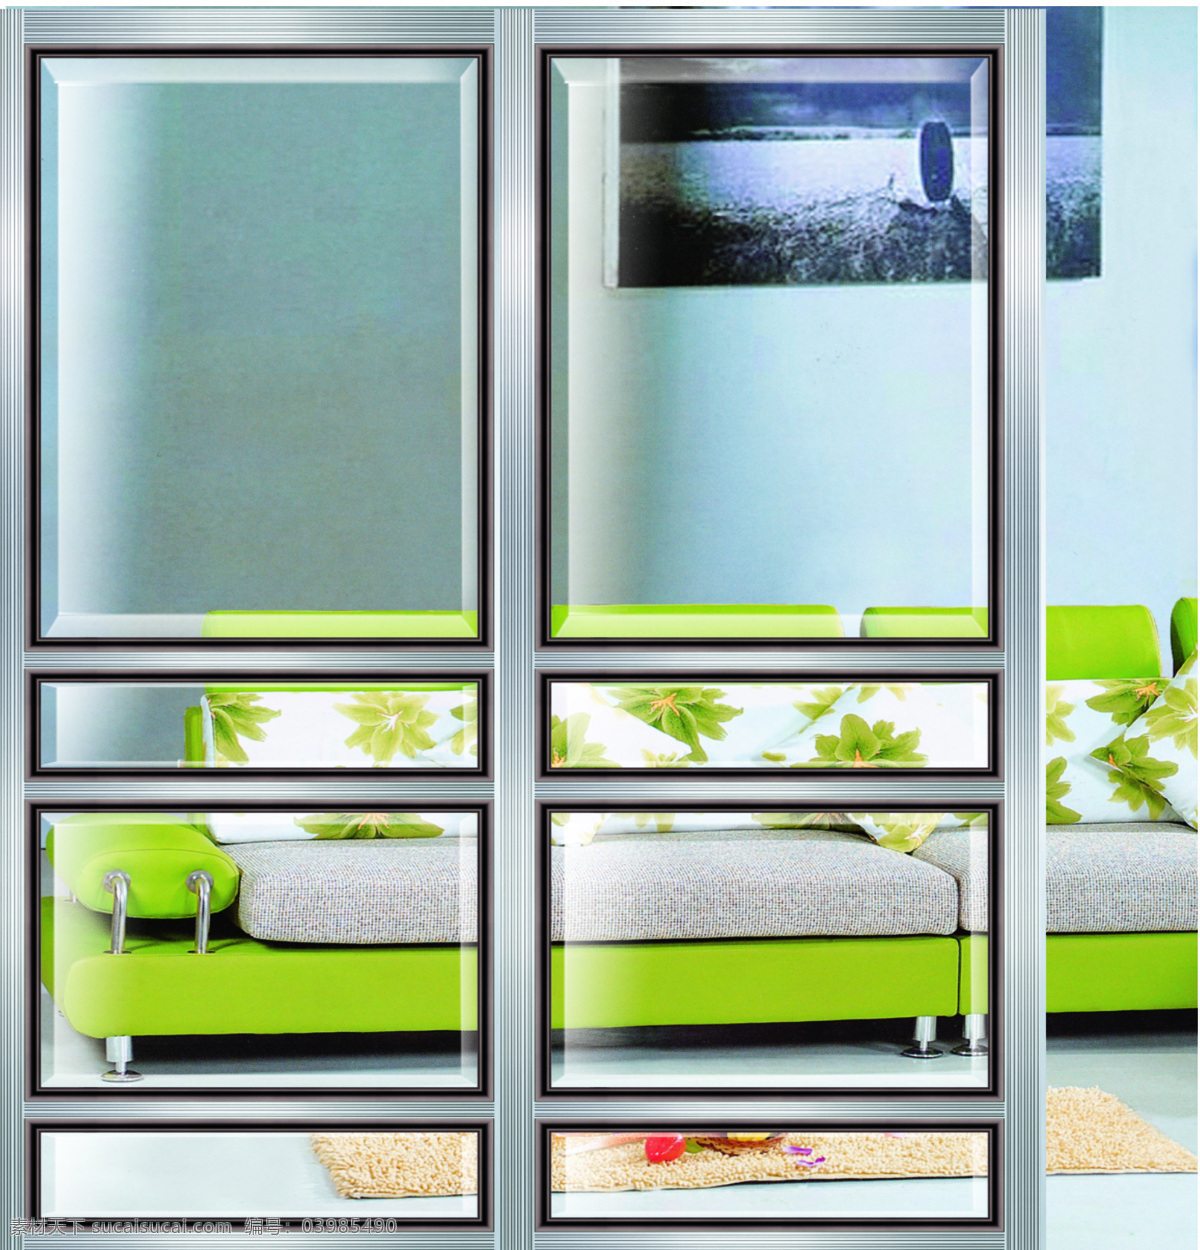 门窗 玻璃门 环境设计 室内设计 推拉门 移门 装饰 家居装饰素材